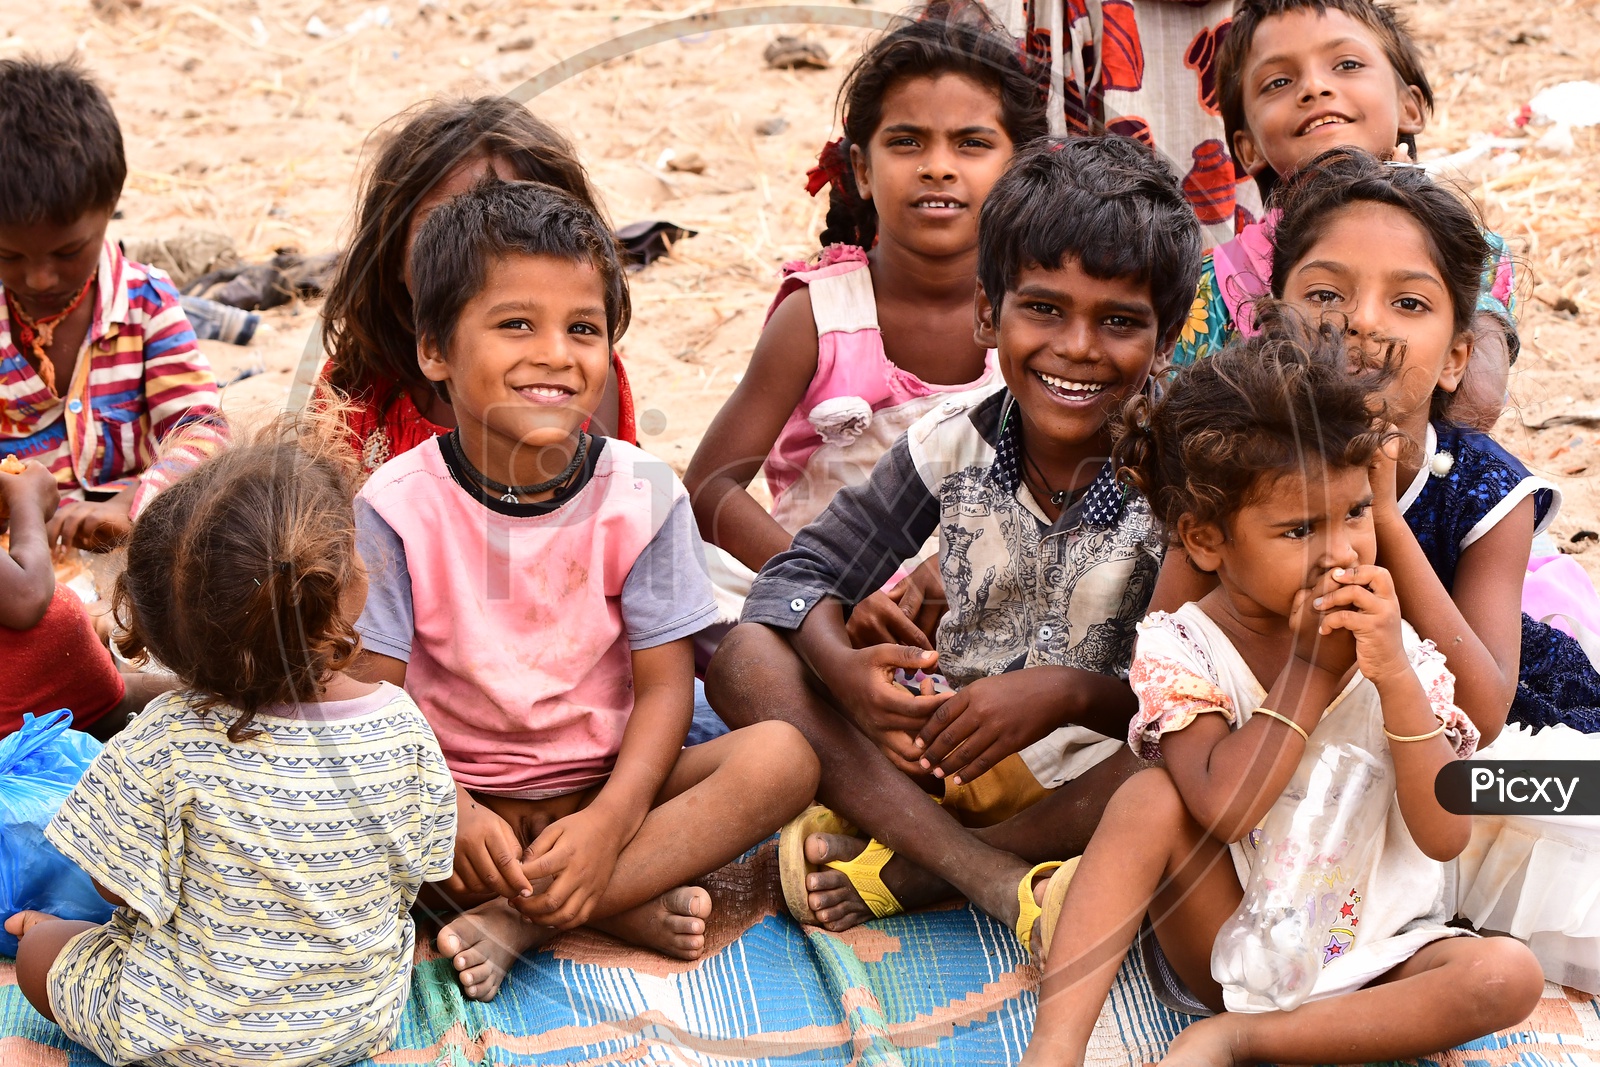 Indian Rural kids smiling